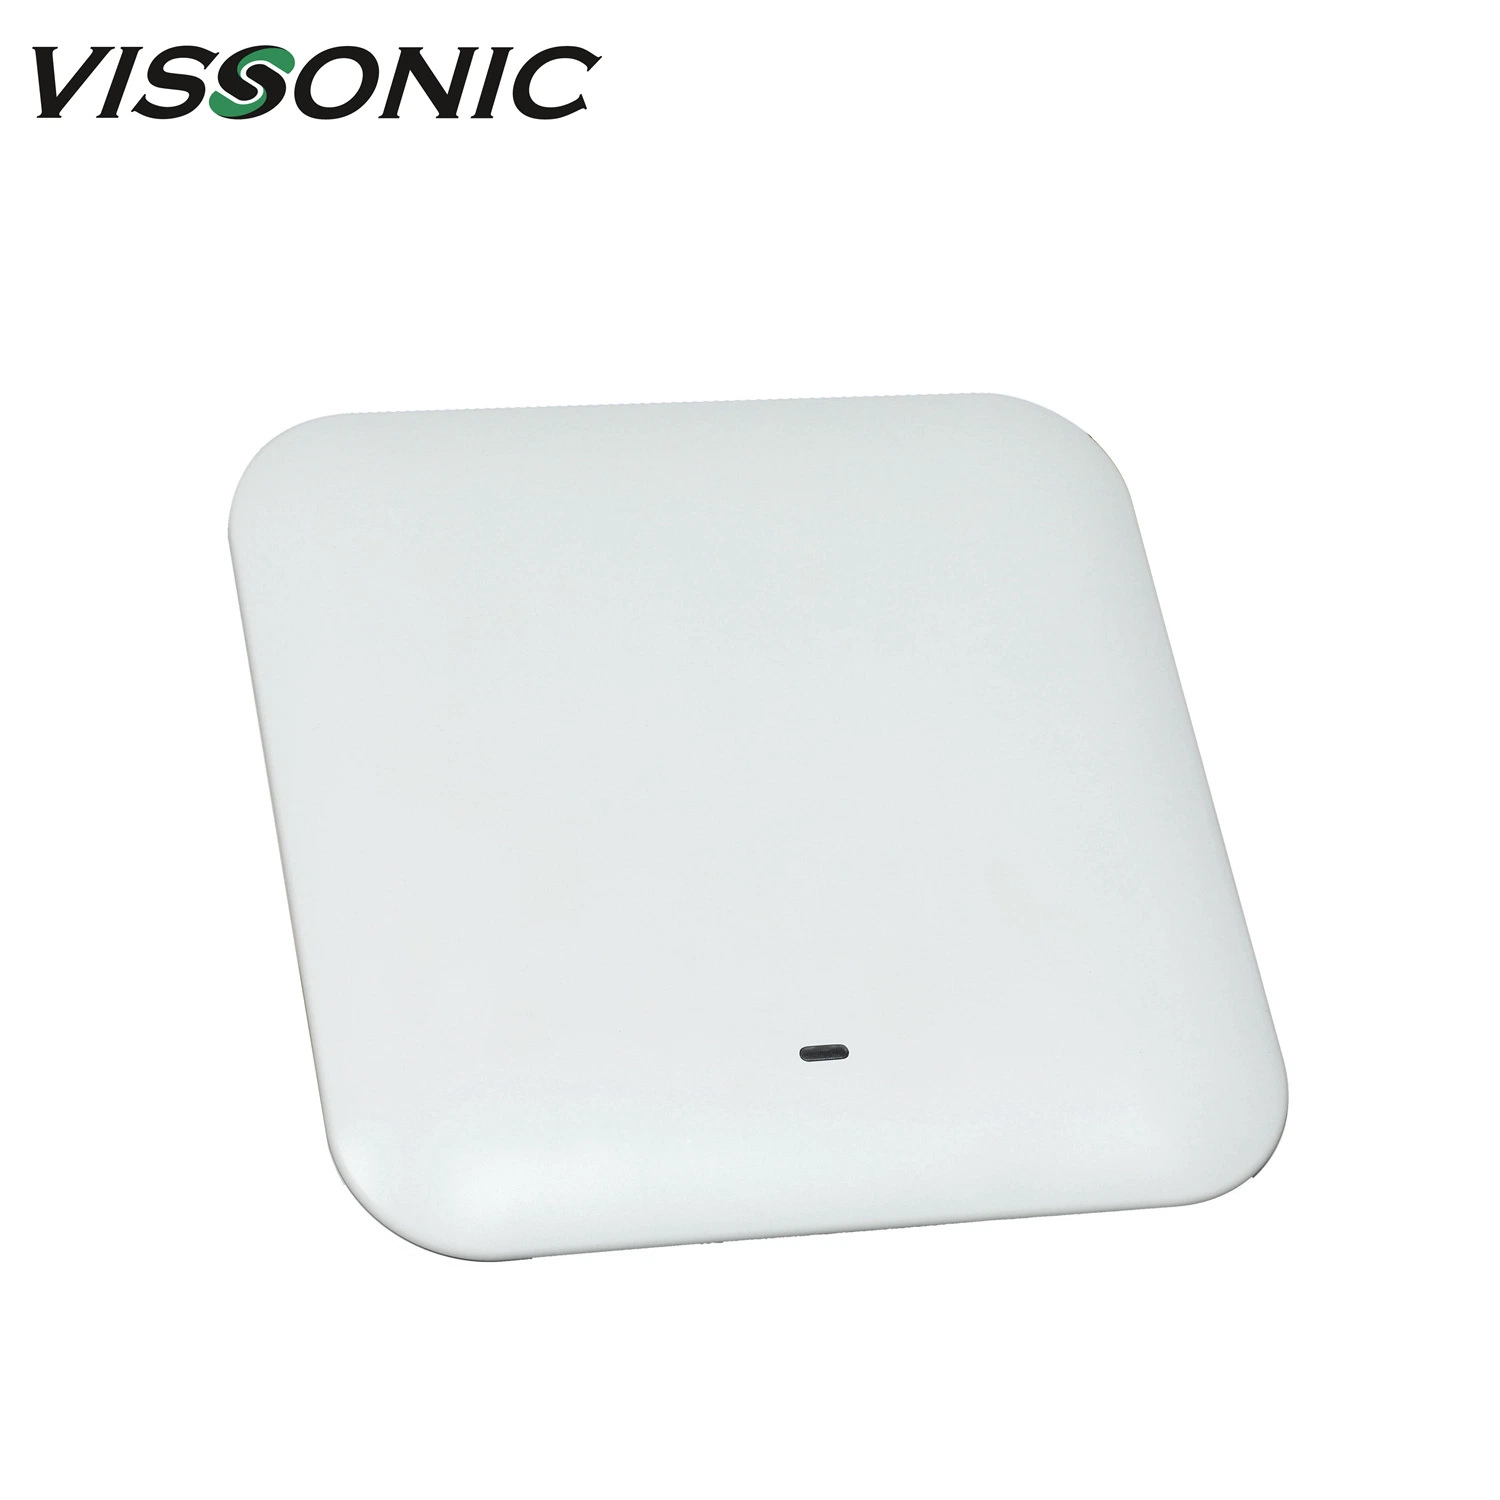 نقطة وصول لاسلكية Vissonic 5 g WiFi لنظام ميكروفون المؤتمرات